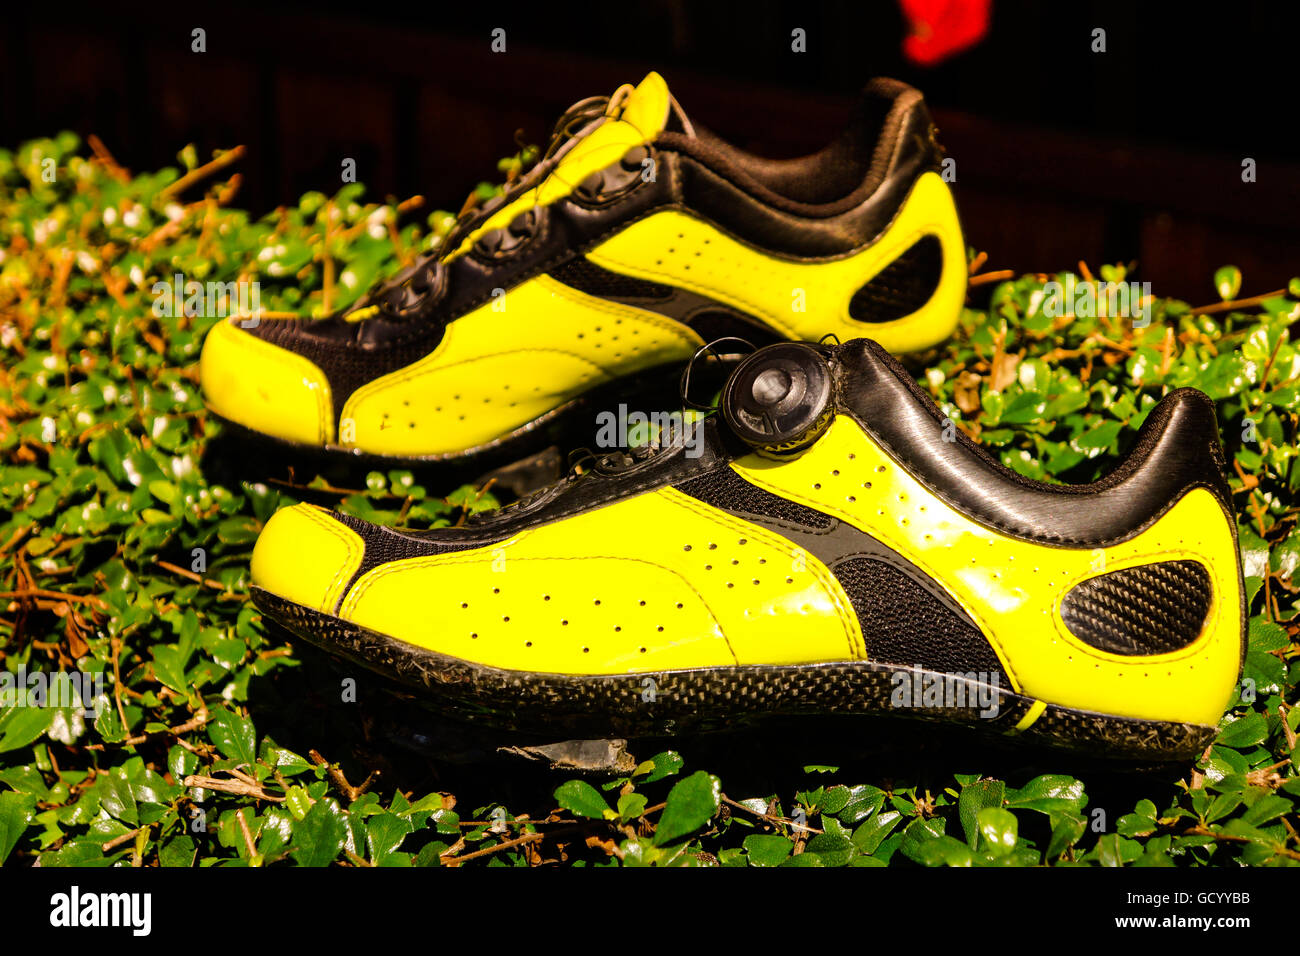 Die gelbe Schuh auf Anlage, schöner Schuh auf noch Natur Hintergrund steht. Stockfoto